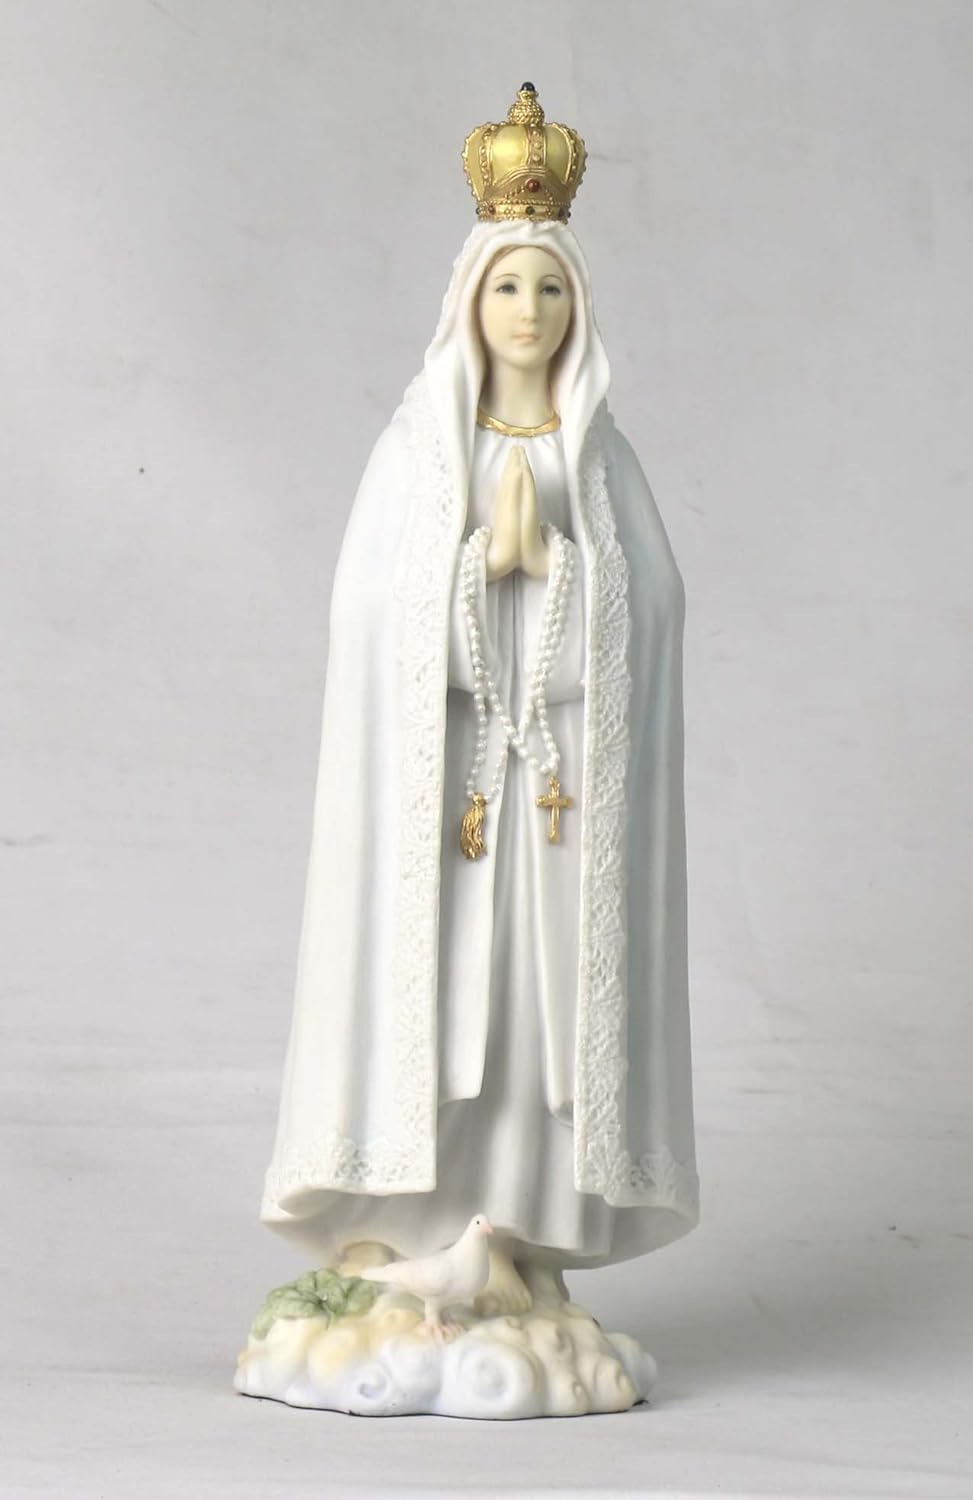 10.63 Inch Our Lady of Fatima Decorative Statue Figurine, White